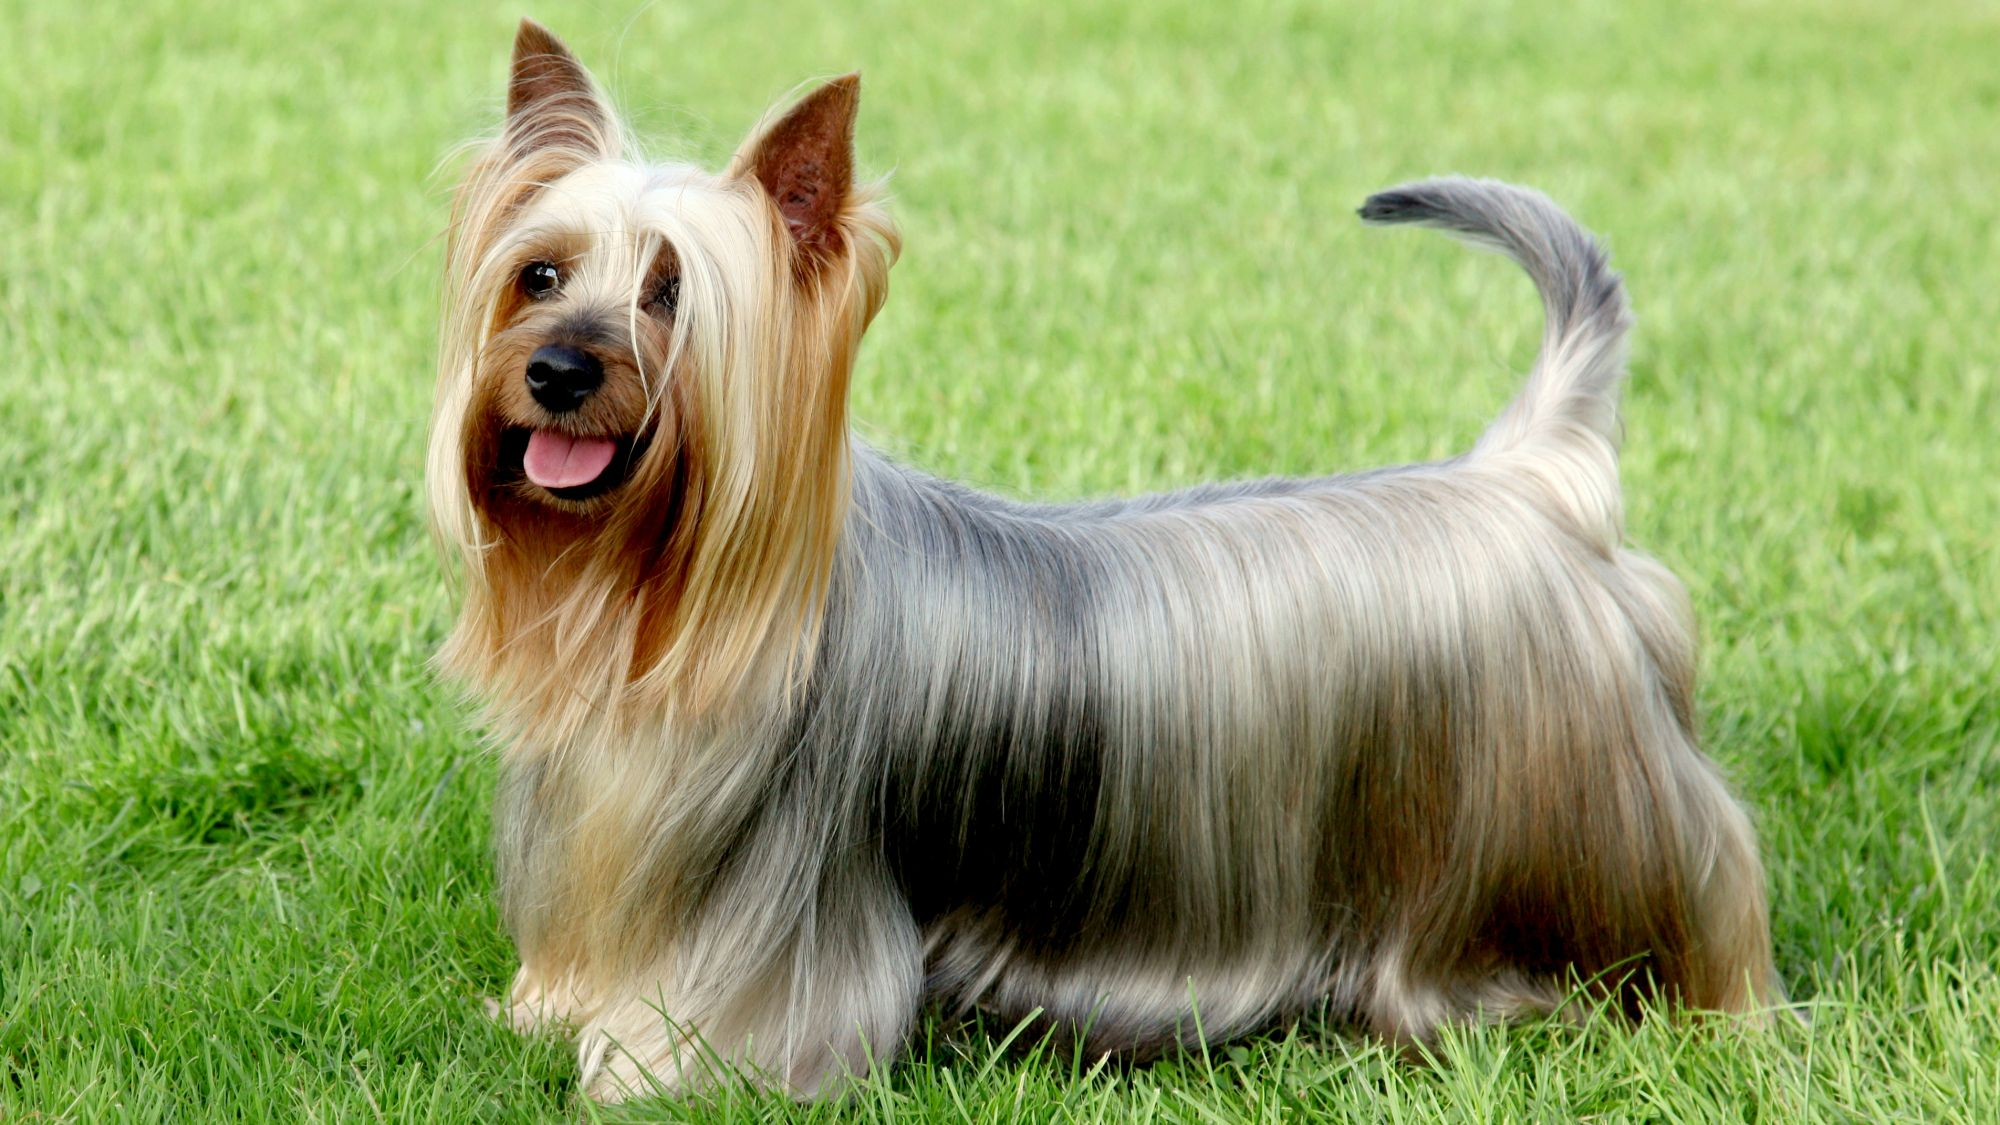 Long haired Australian Silky Terrier standing on grass